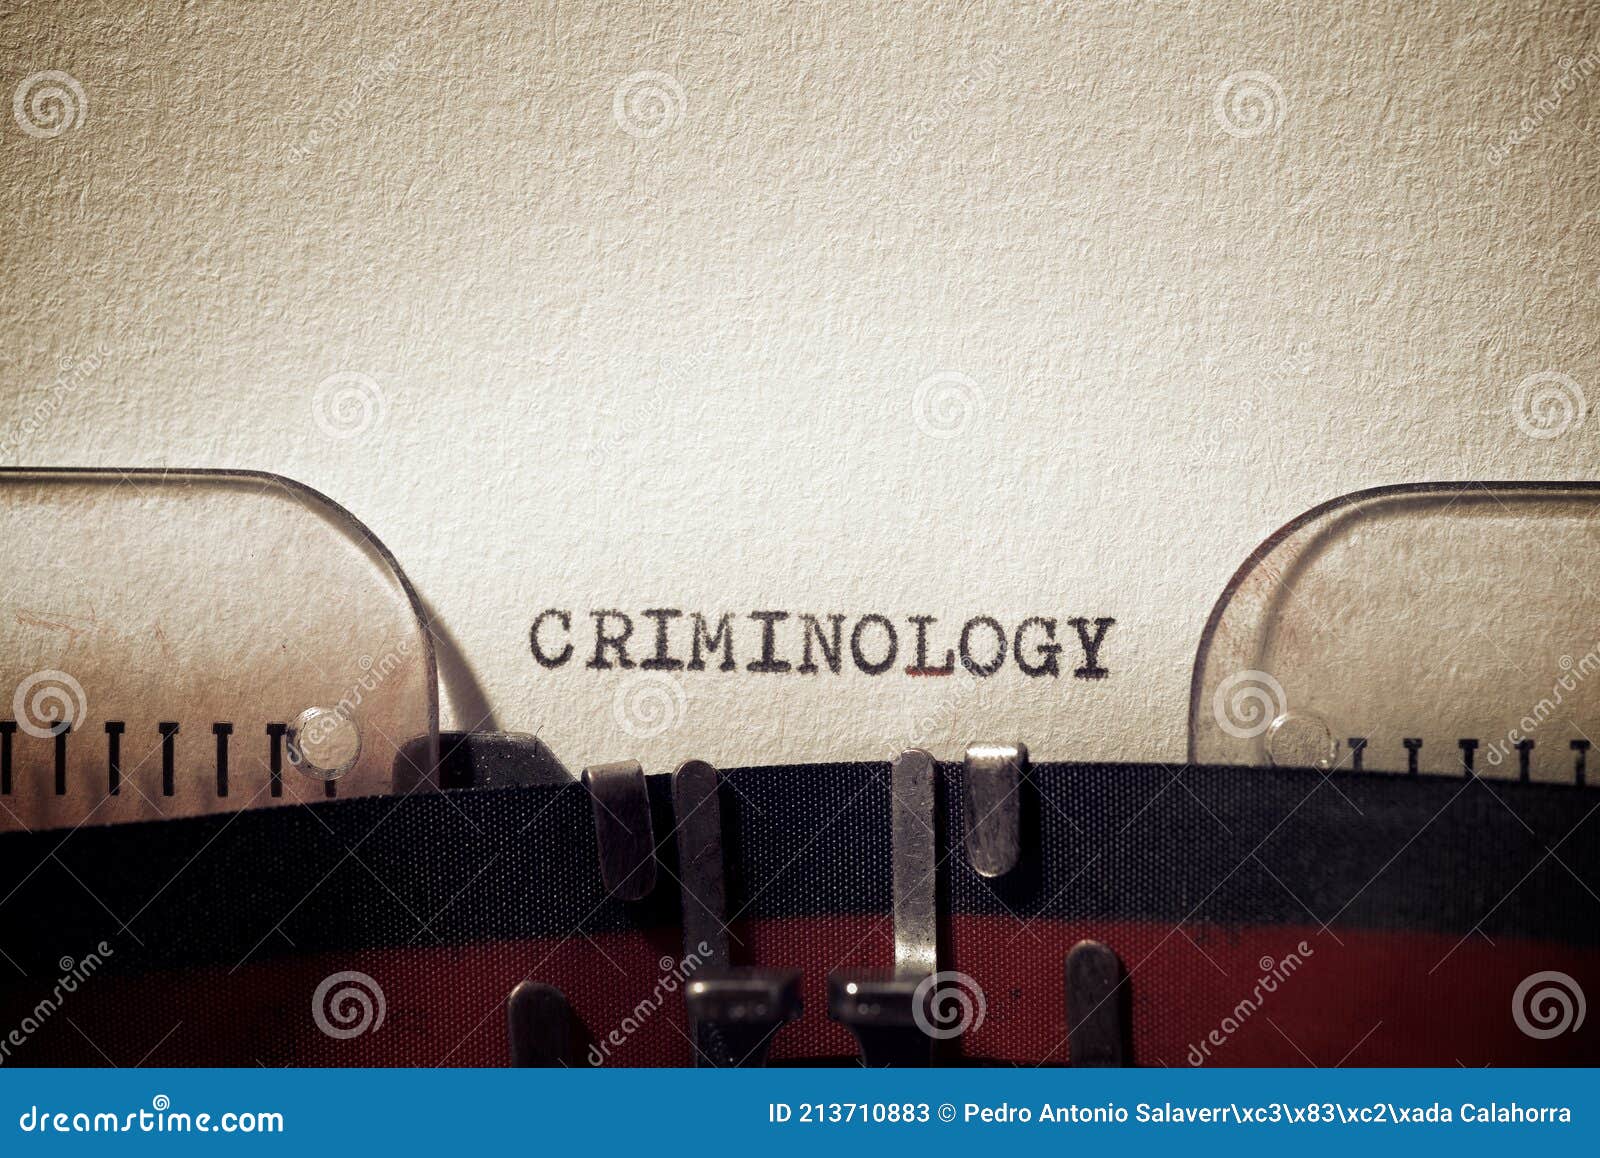 criminology concept view